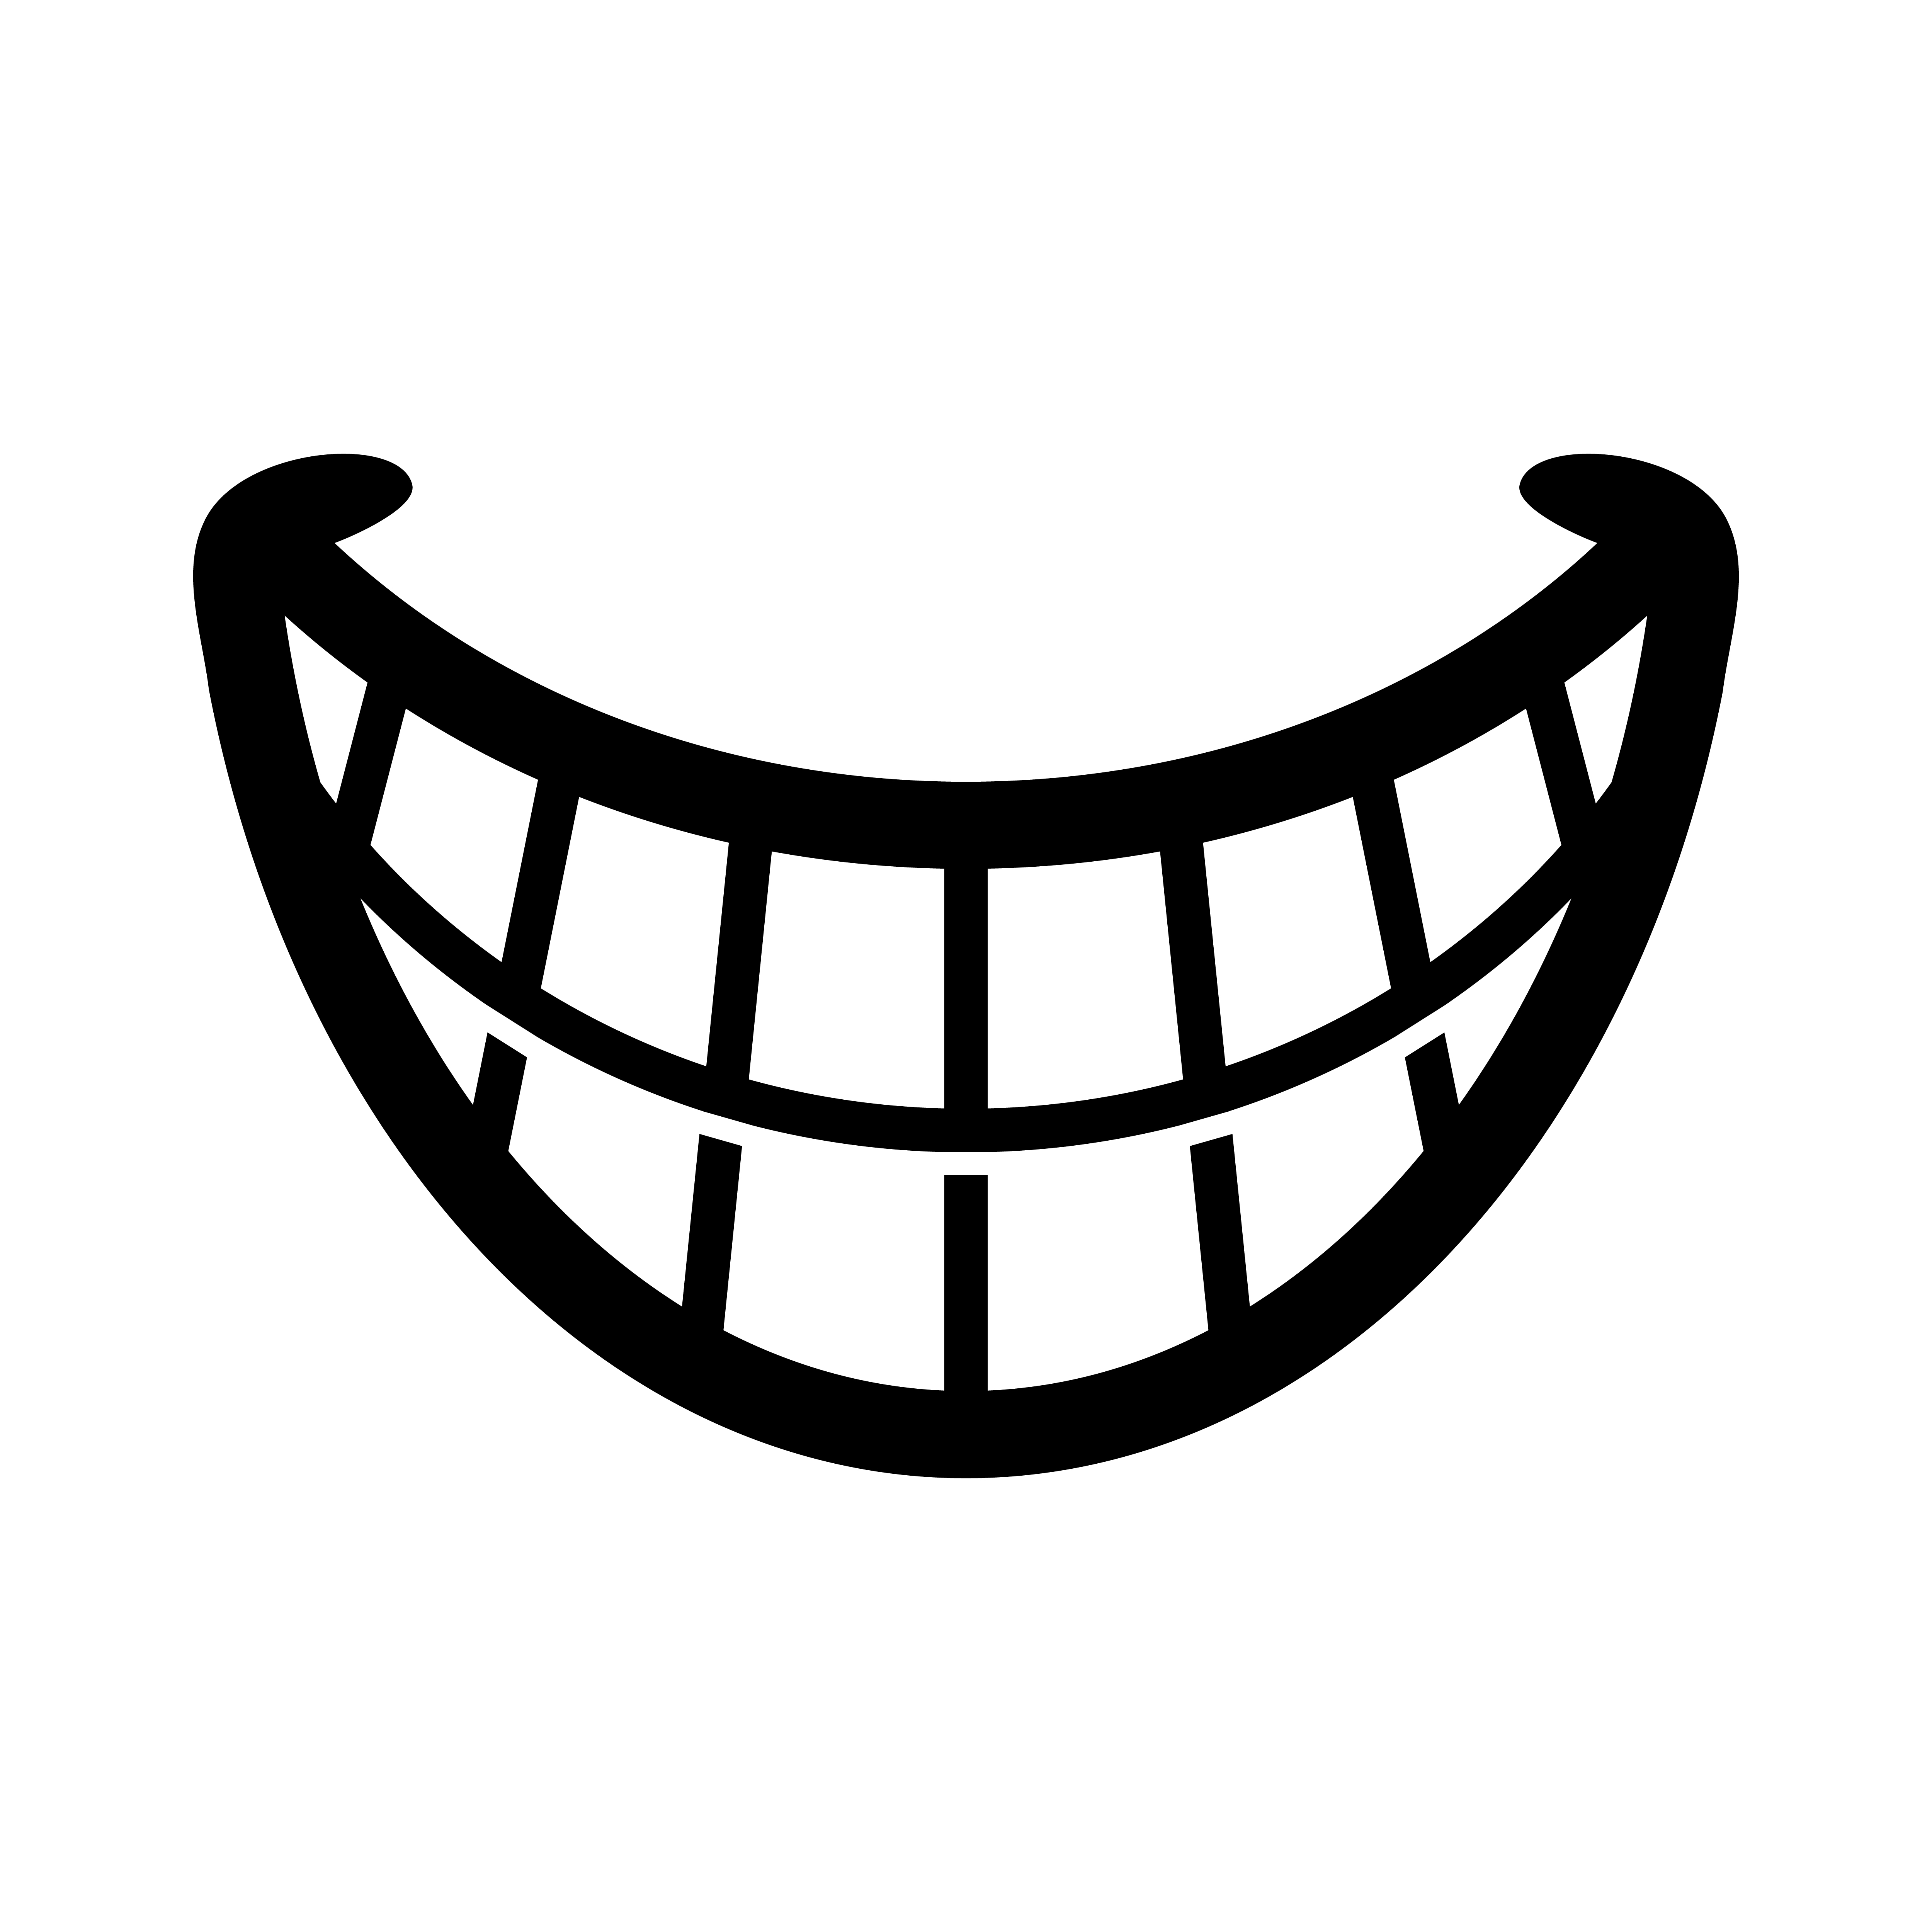 big-happy-toothy-cartoon-smile-vector-icon.jpg